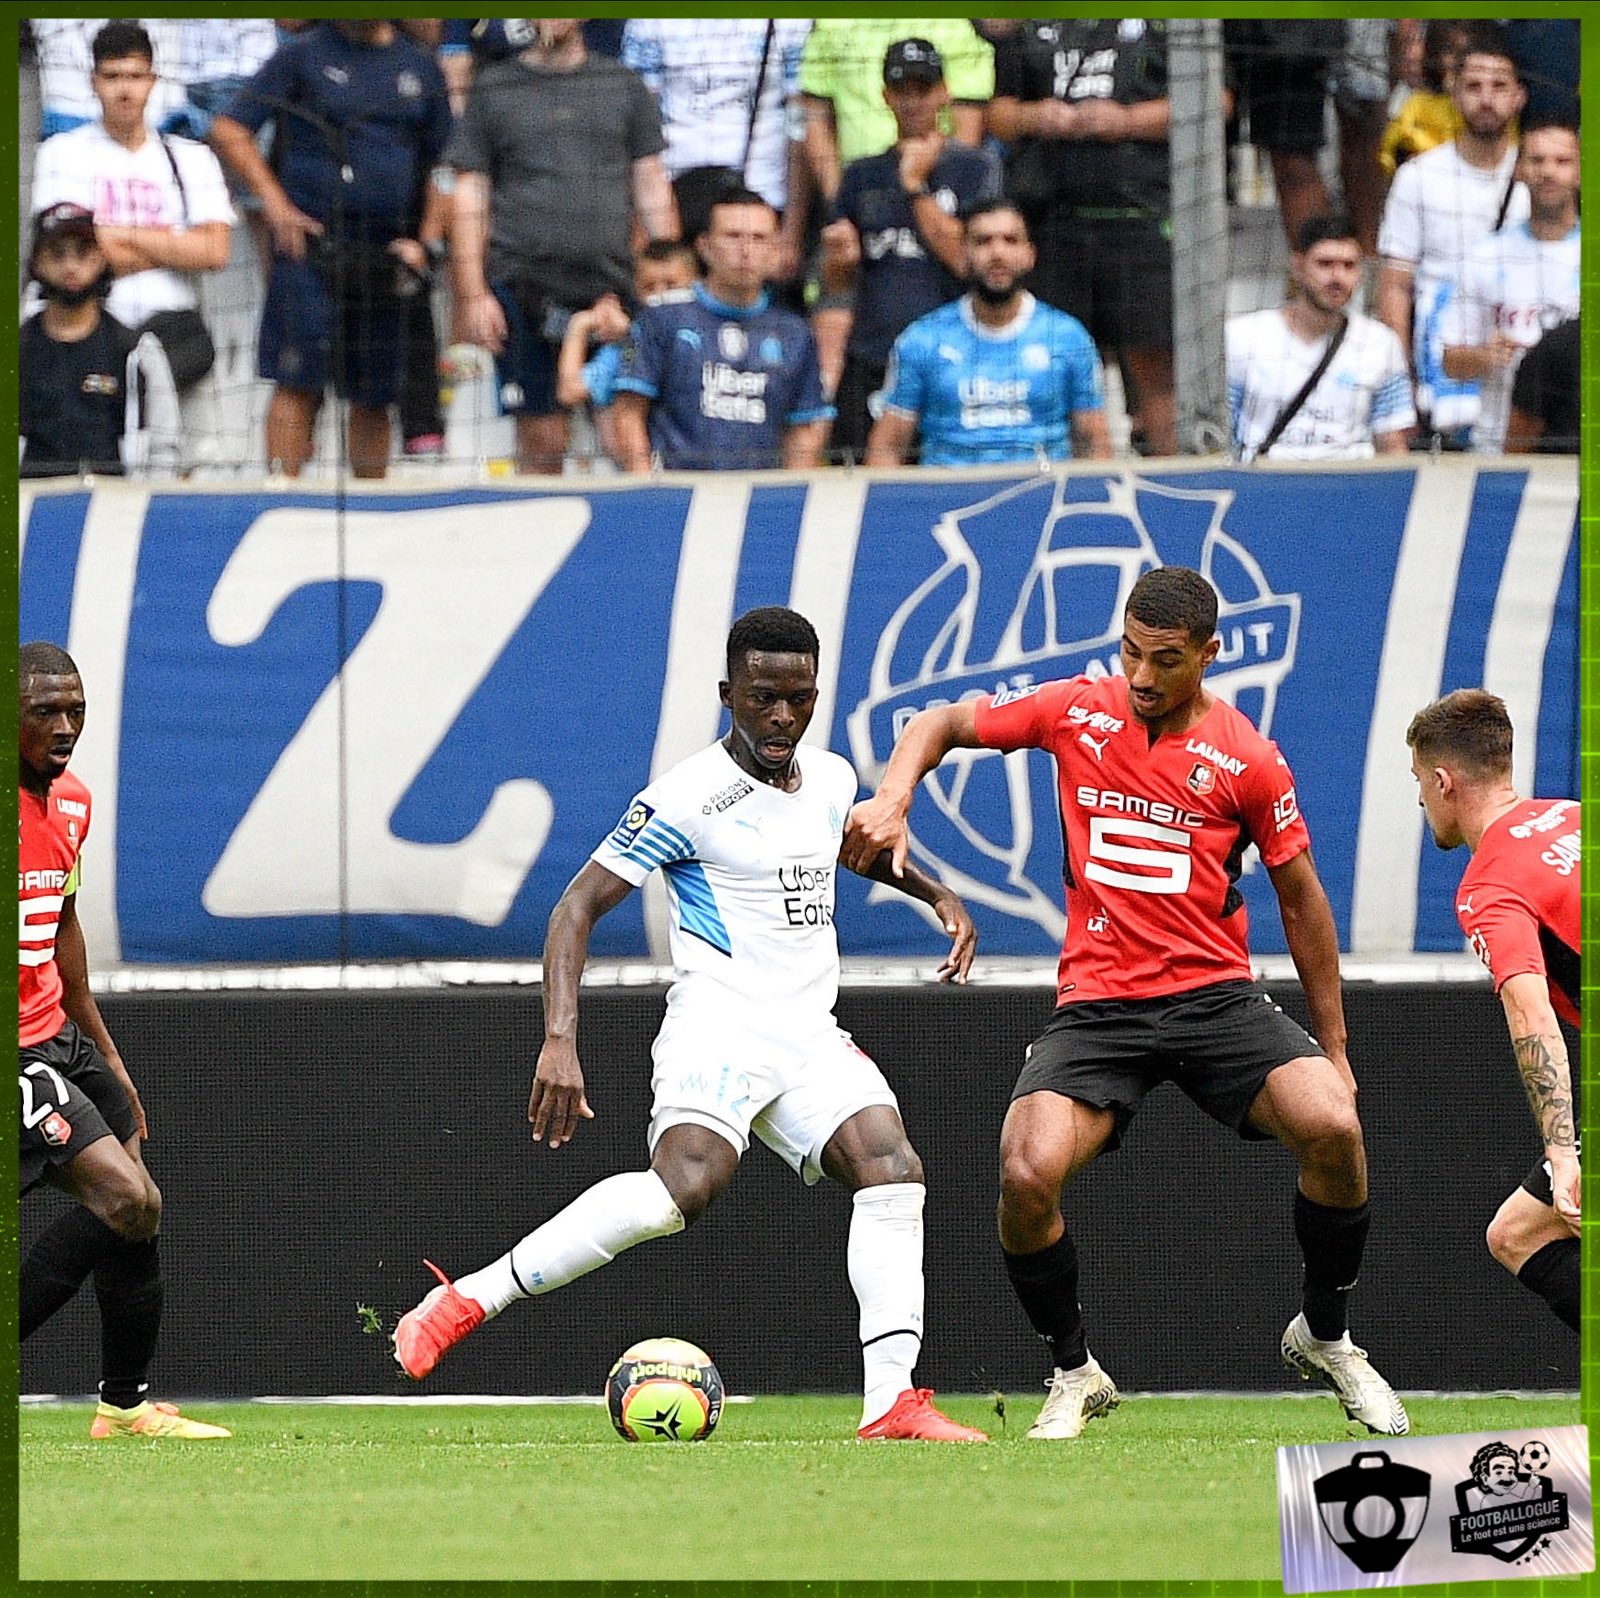 OM-Rennes: Bamba Dieng confirme sa bonne forme en ouvrant le score